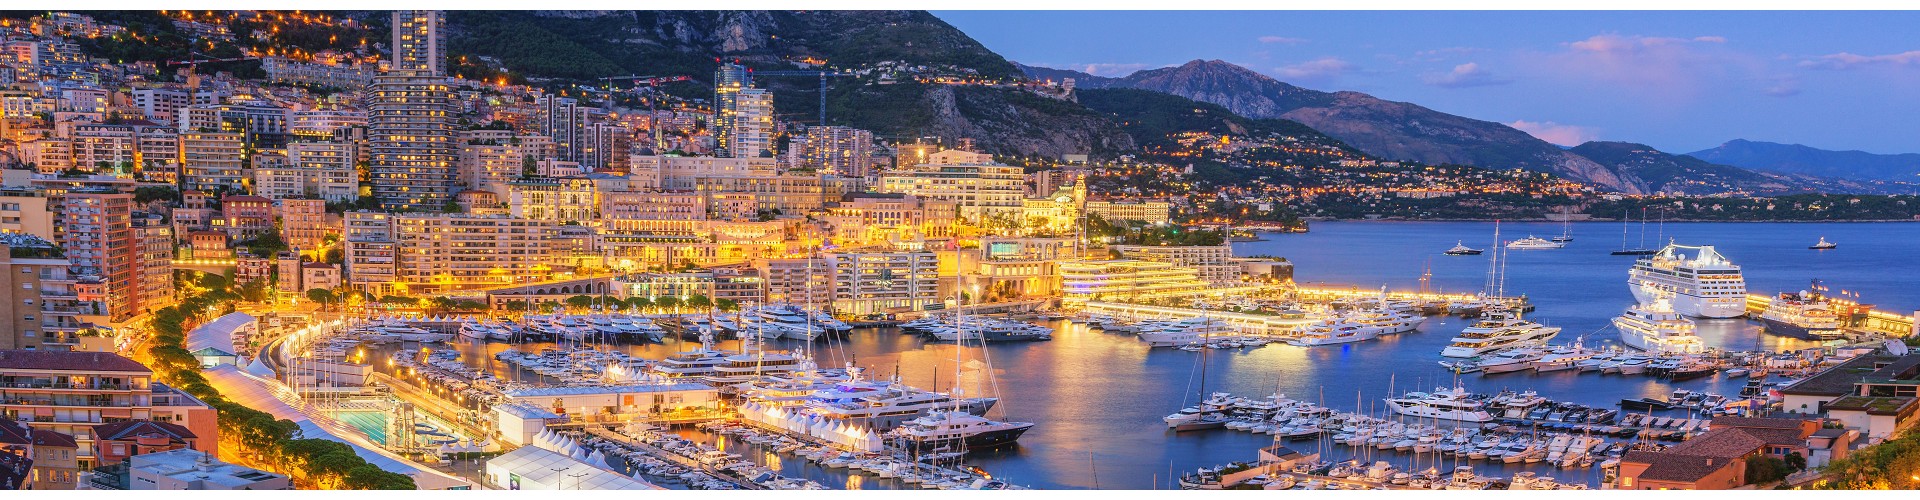 Transportation from Monte Carlo to Portofino | Nice to Portofino Private Driver